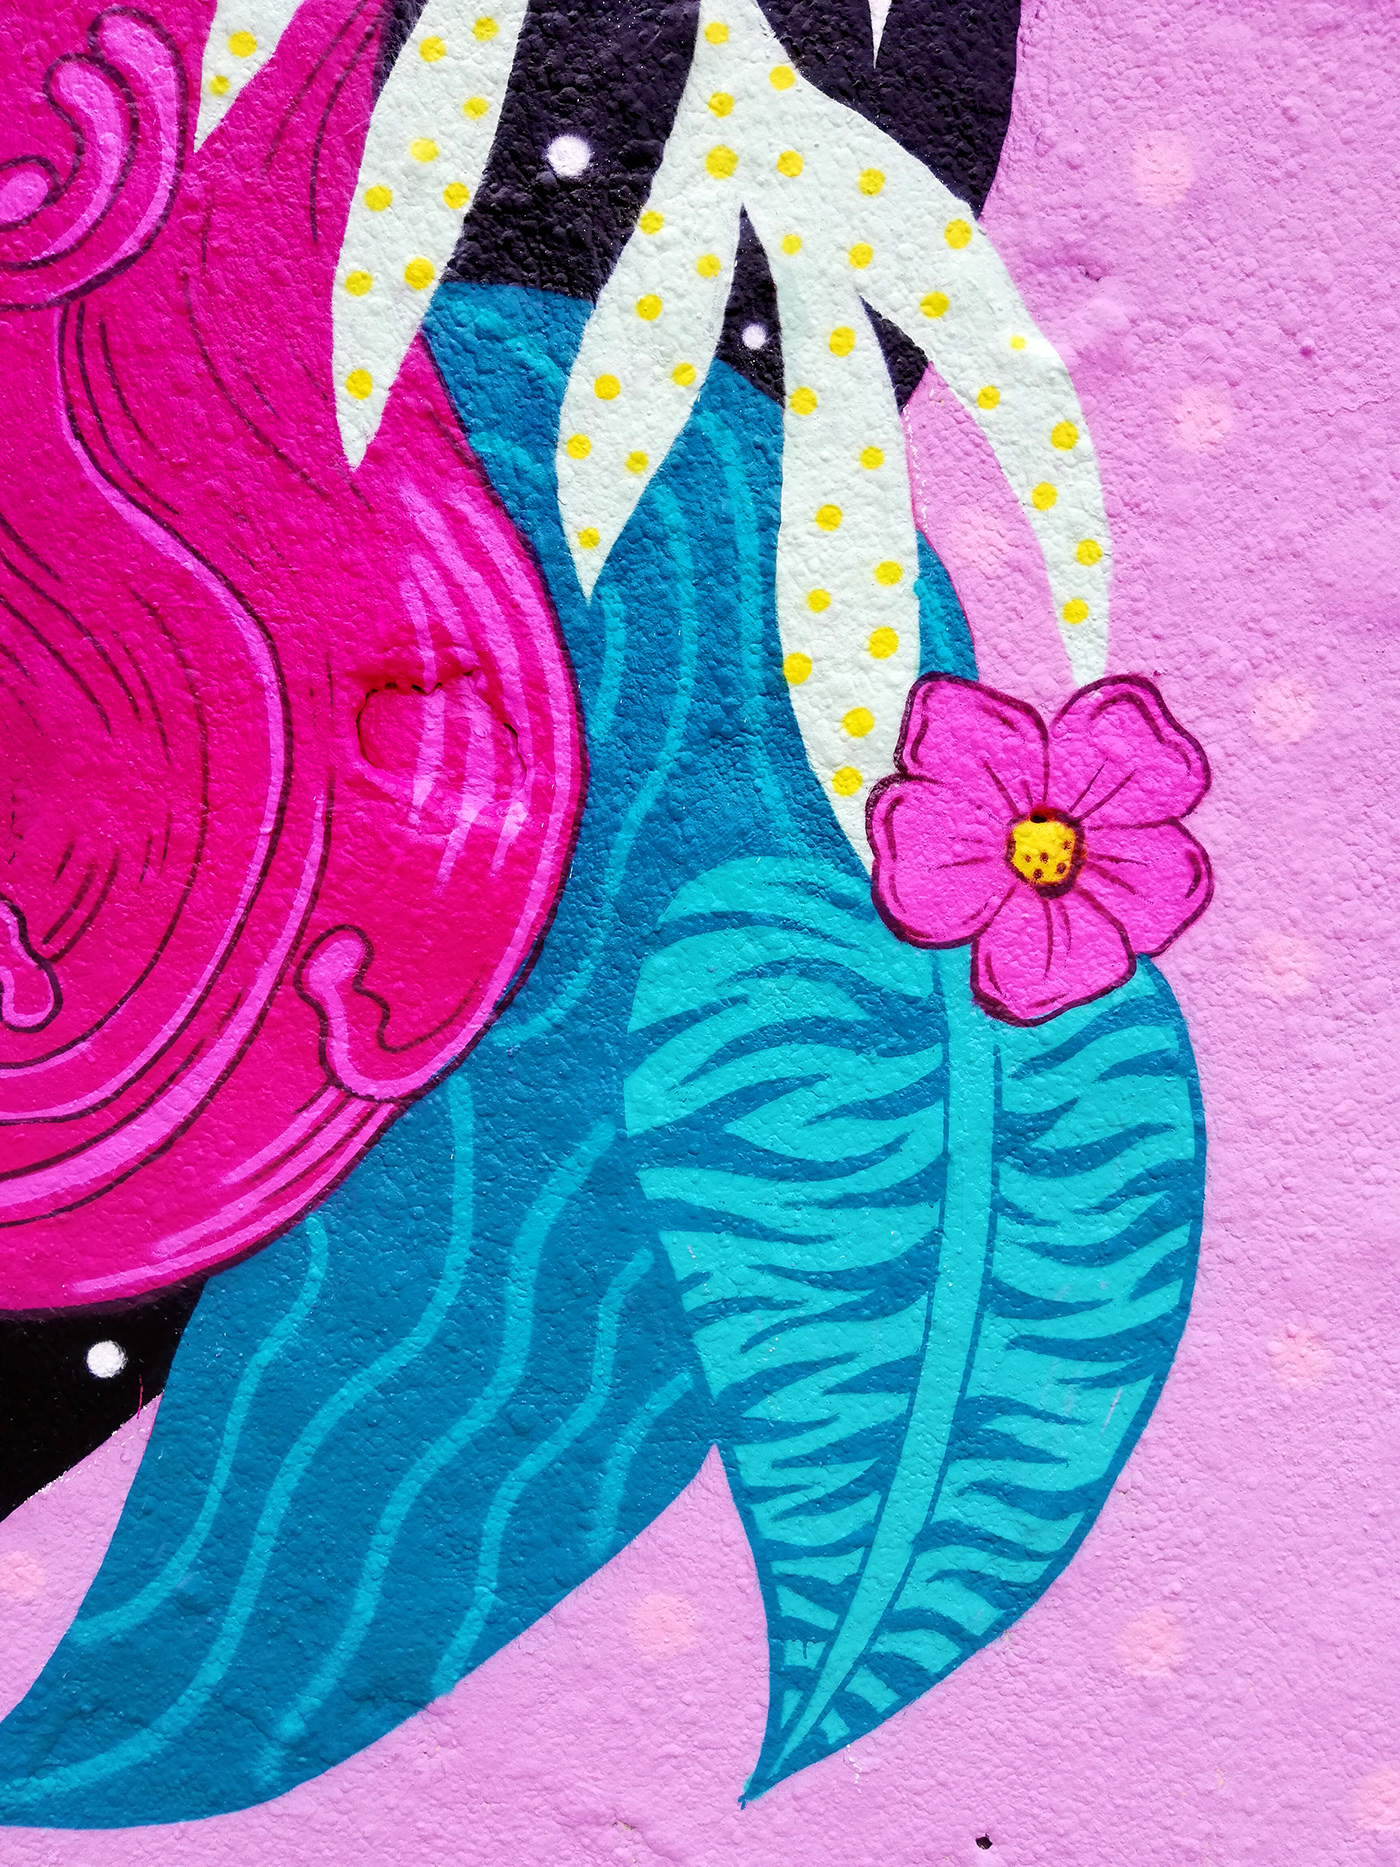 women empowerment feminism graffiti jam plants Tropical grow up sisterhood support Girl Power